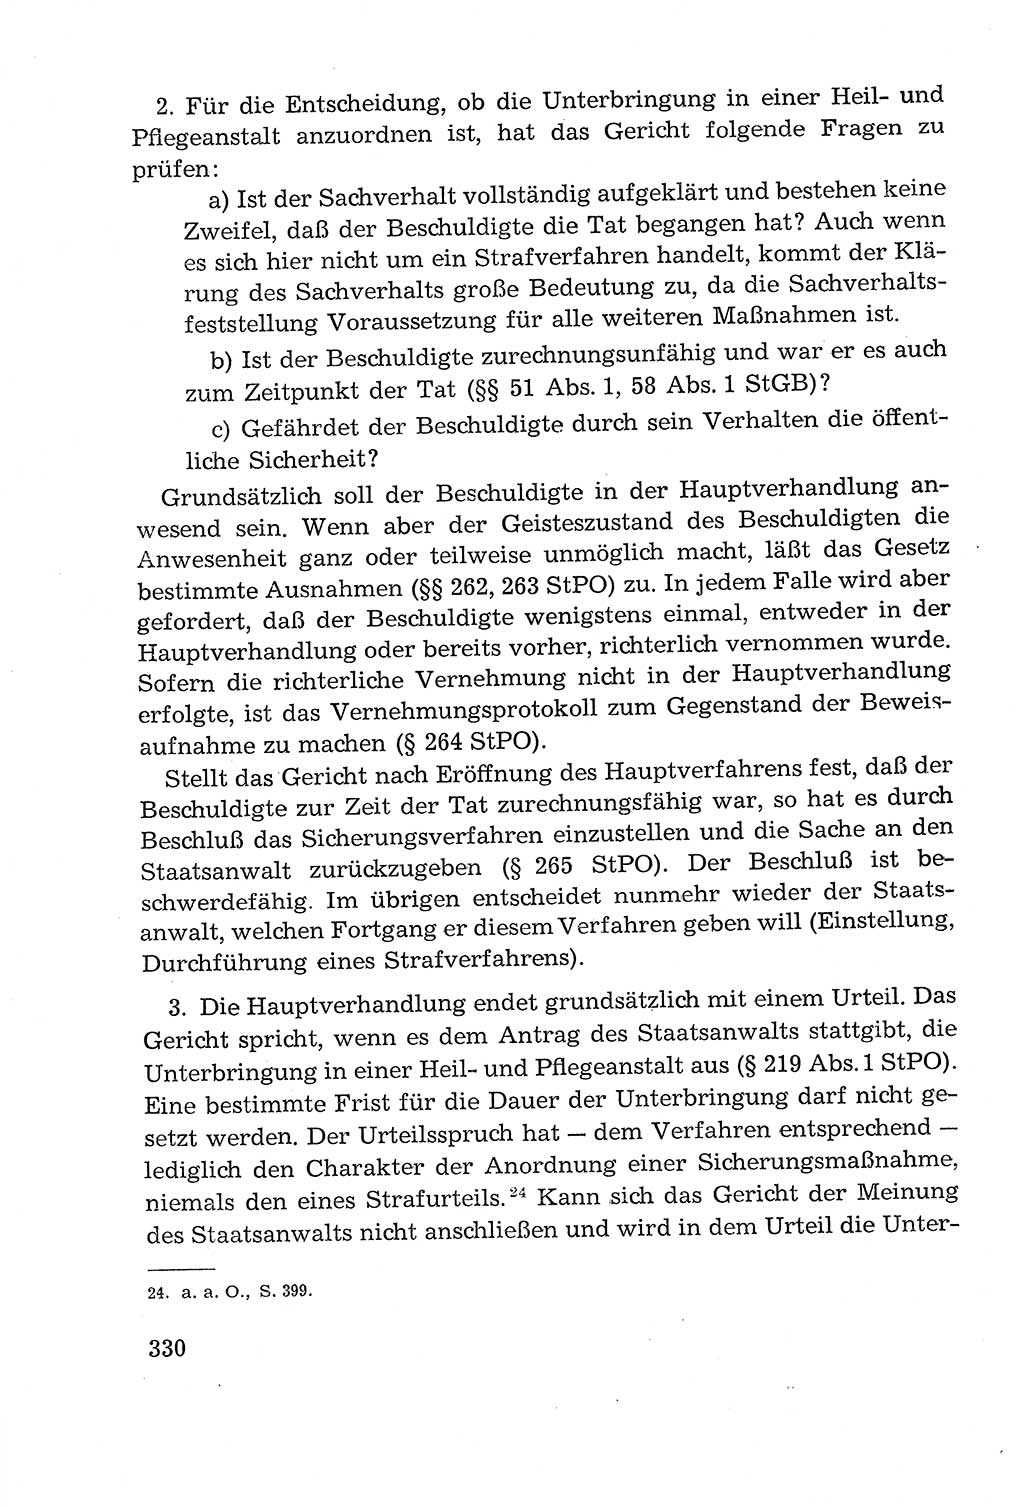 Leitfaden des Strafprozeßrechts der Deutschen Demokratischen Republik (DDR) 1959, Seite 330 (LF StPR DDR 1959, S. 330)